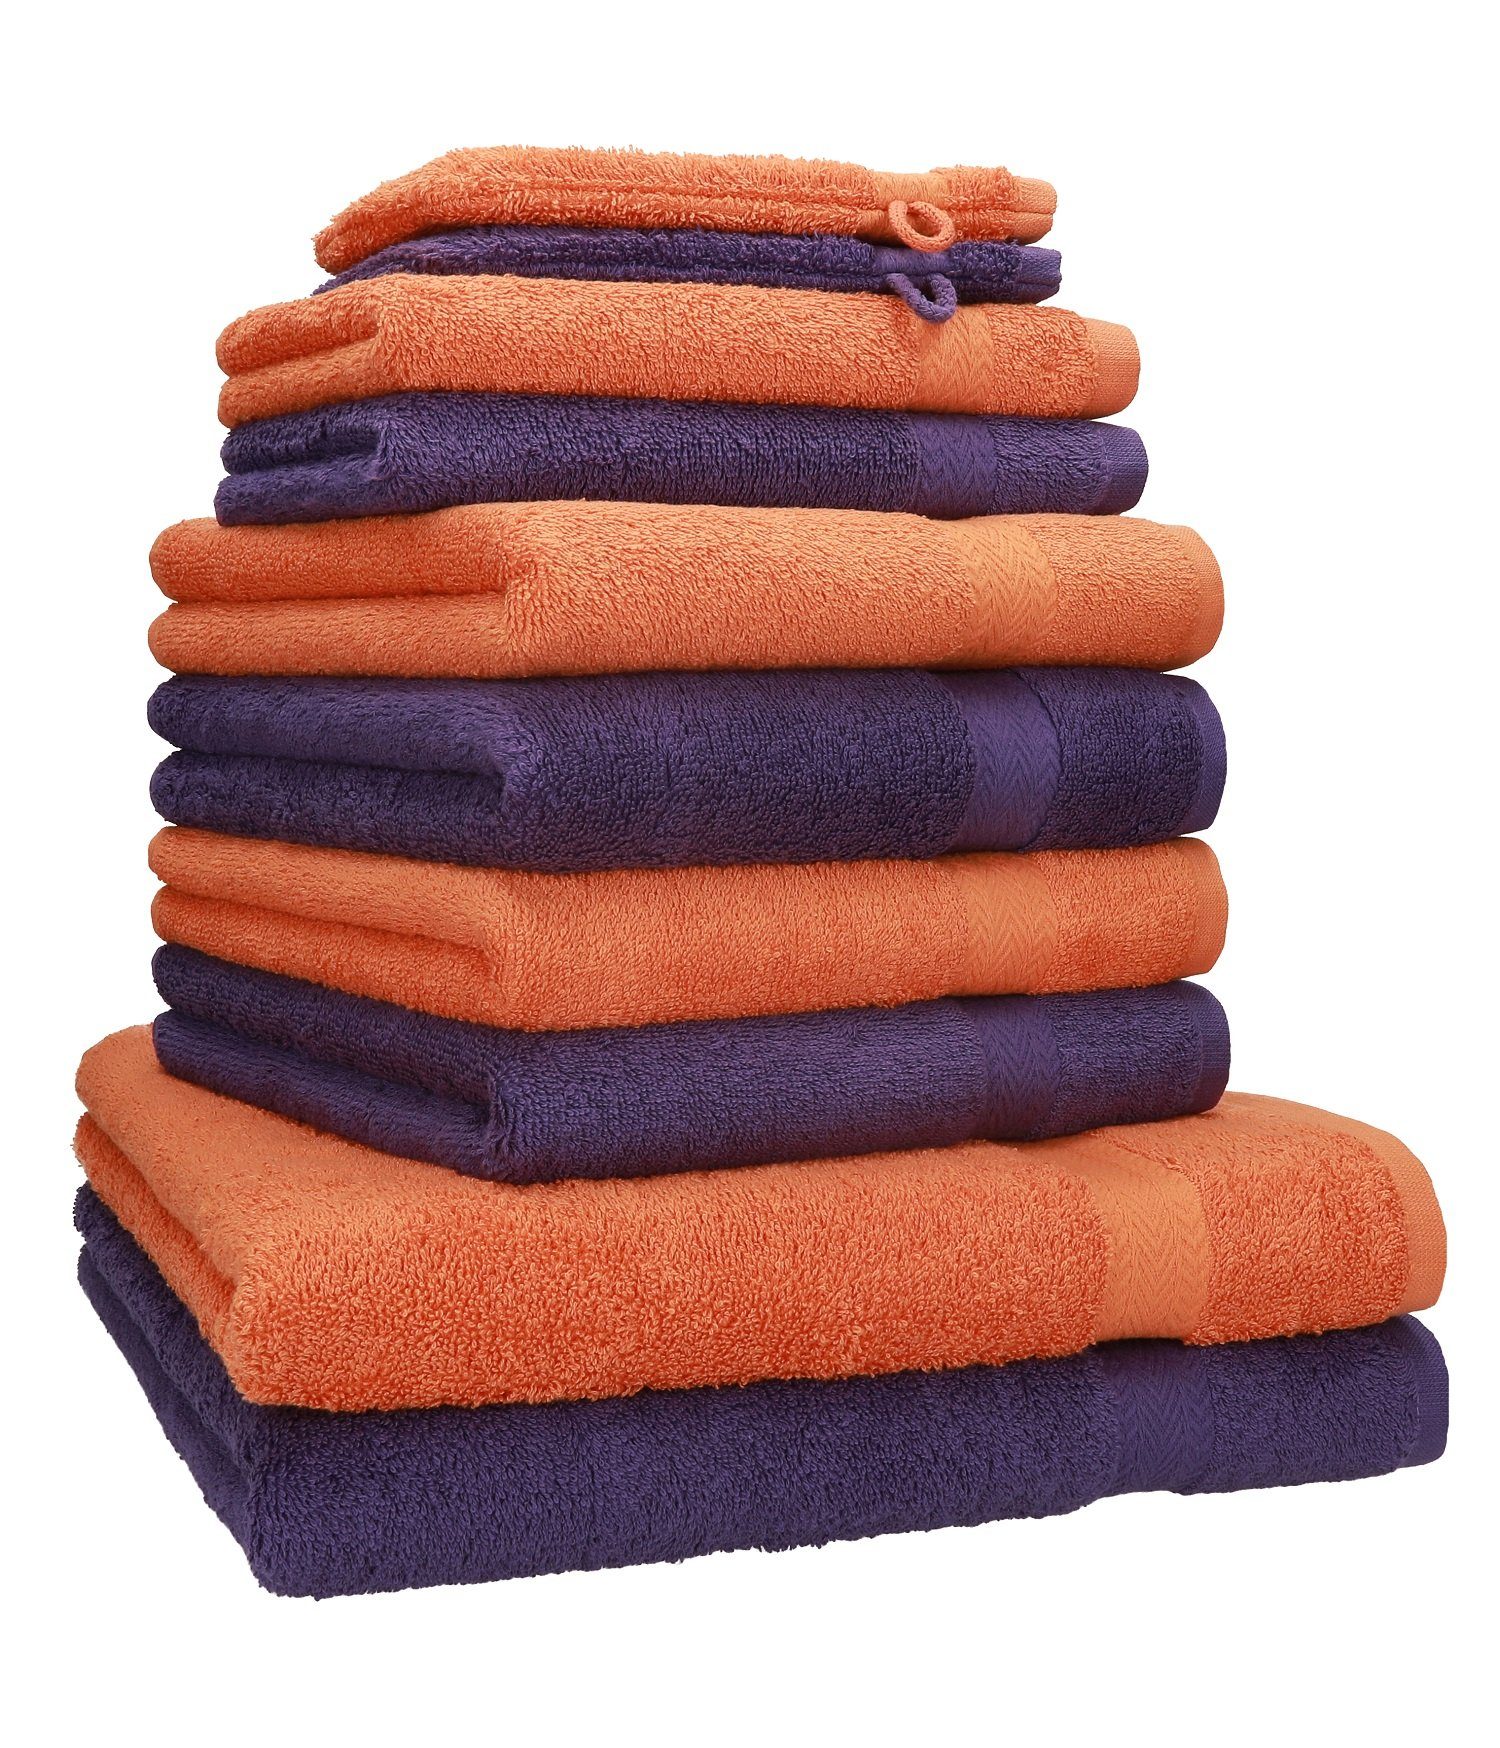 Betz Handtuch Set 10-TLG. Handtuch-Set Premium Farbe Orange & Lila, 100% B aumwolle, (10-tlg)